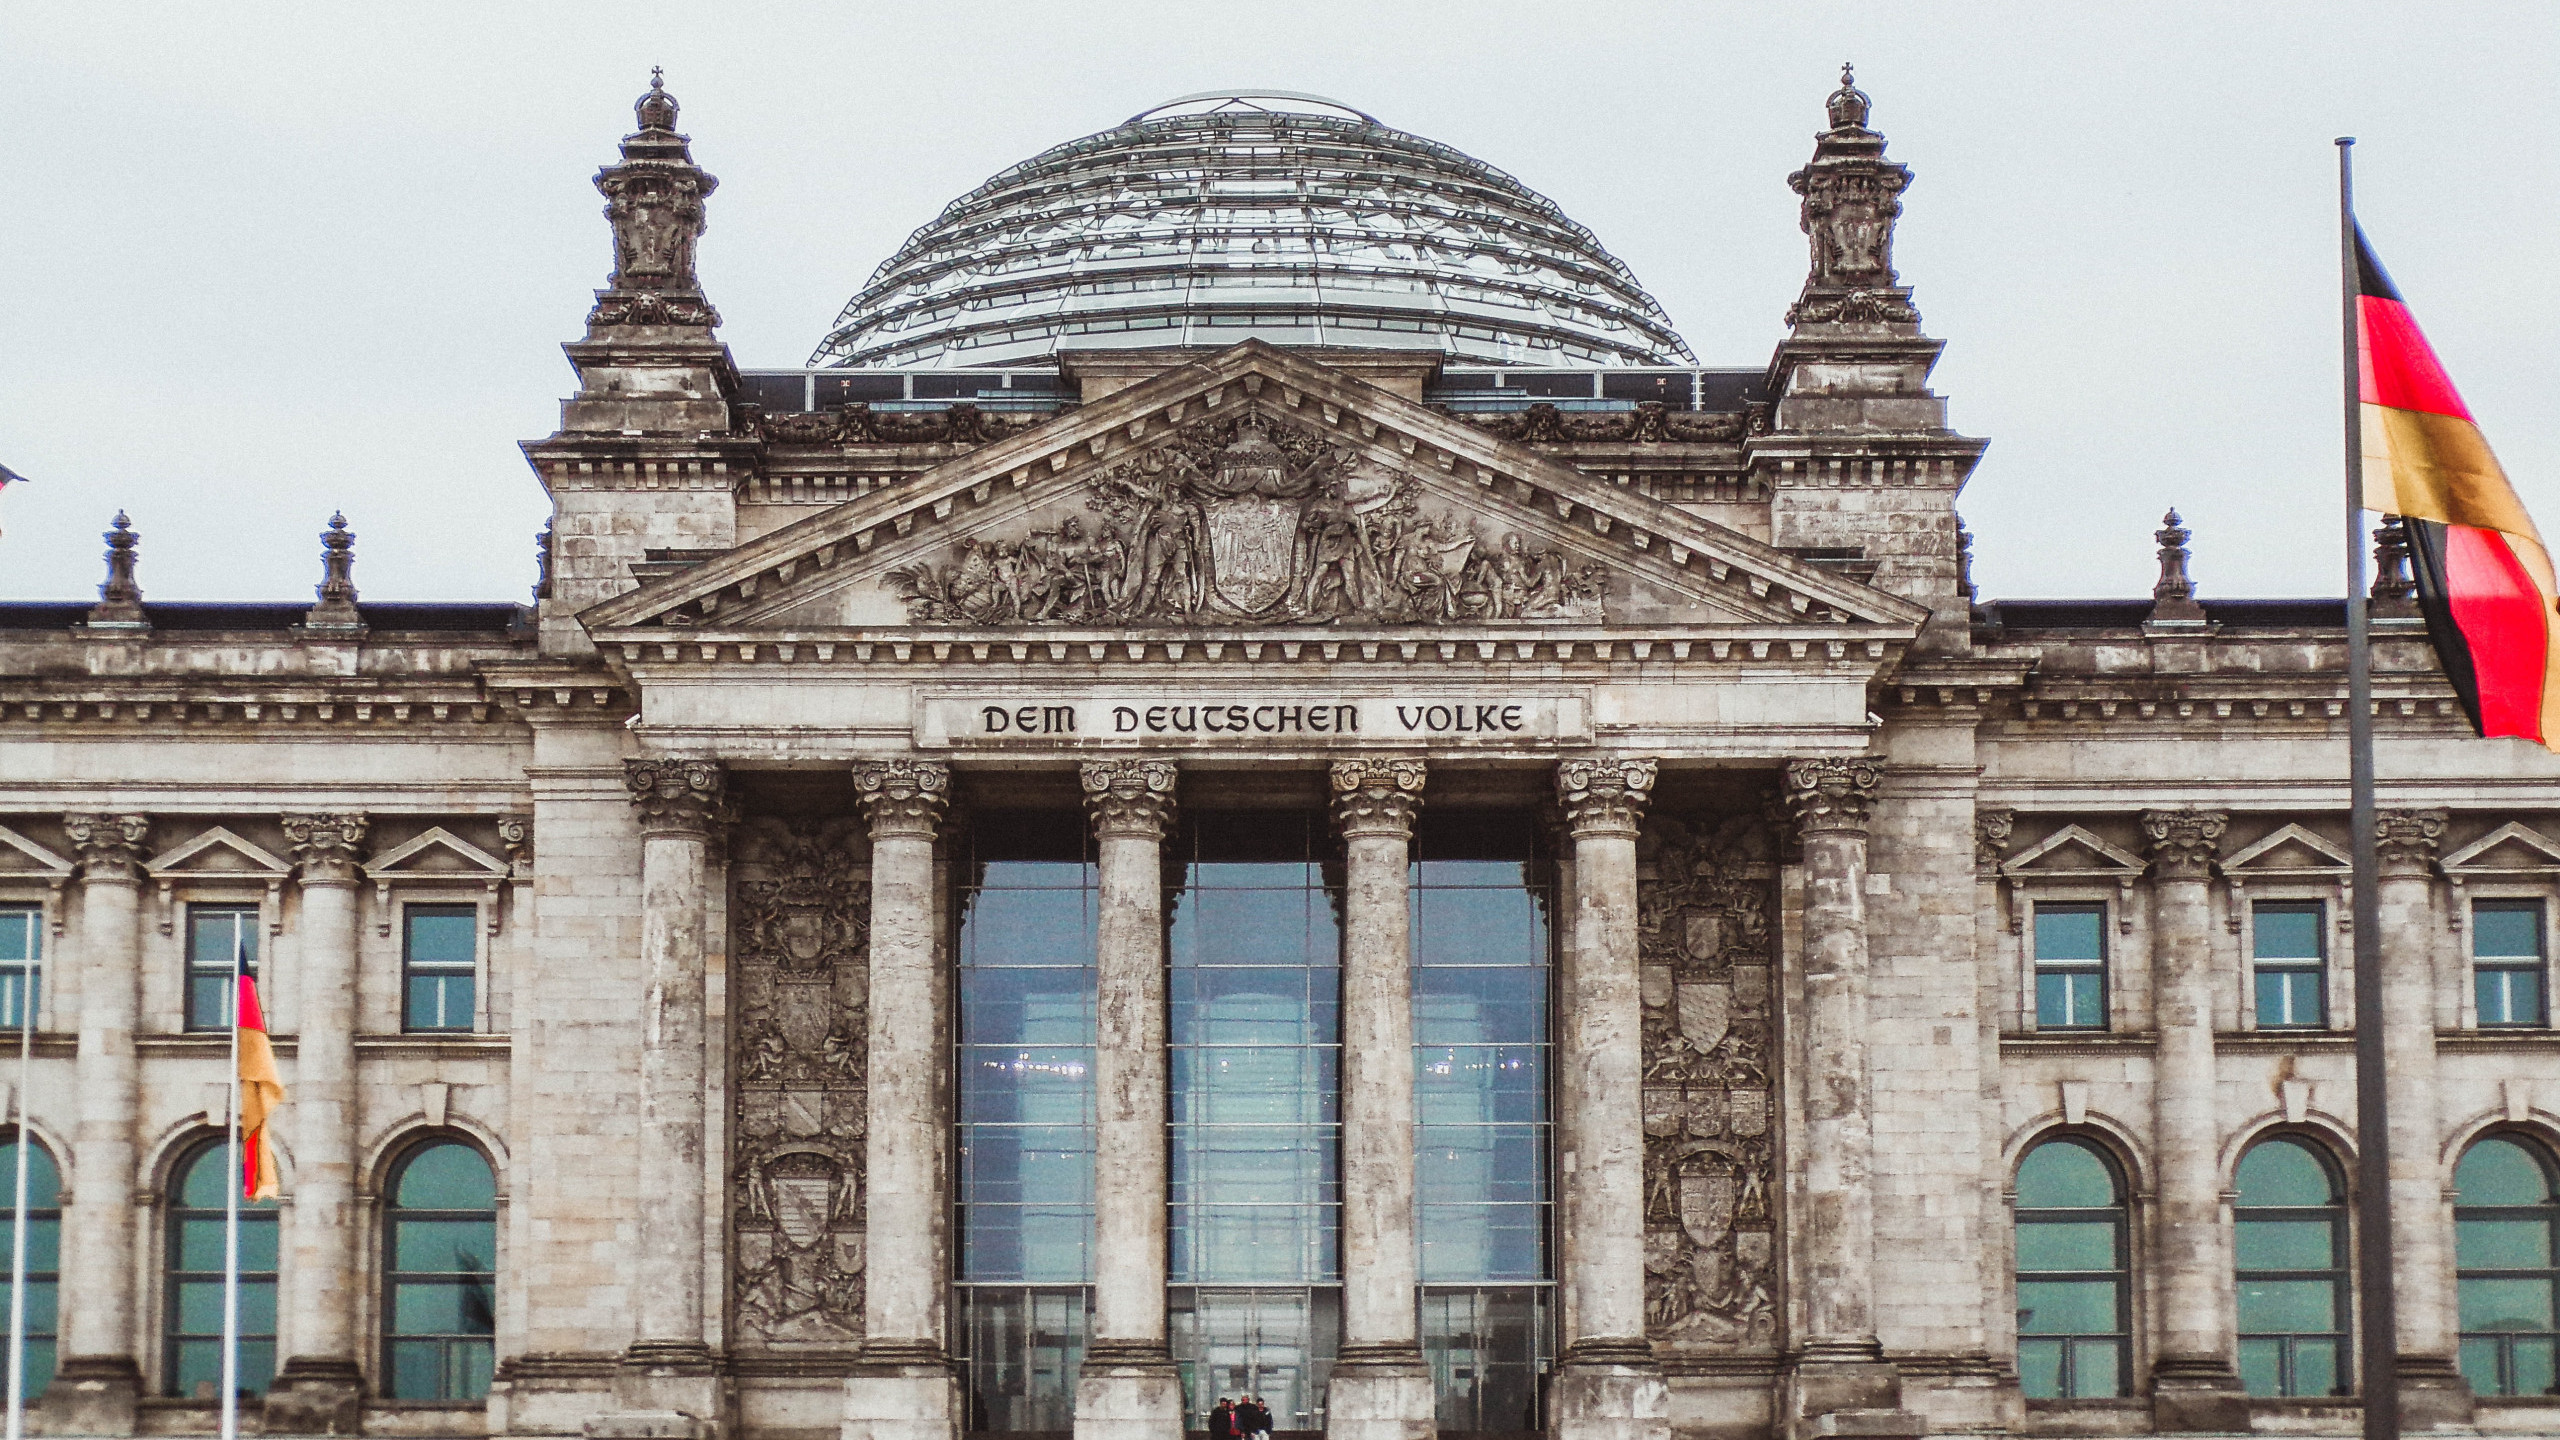 Am 6. April fand vor dem Bundestagsgebäude in Berlin eine Demonstration statt